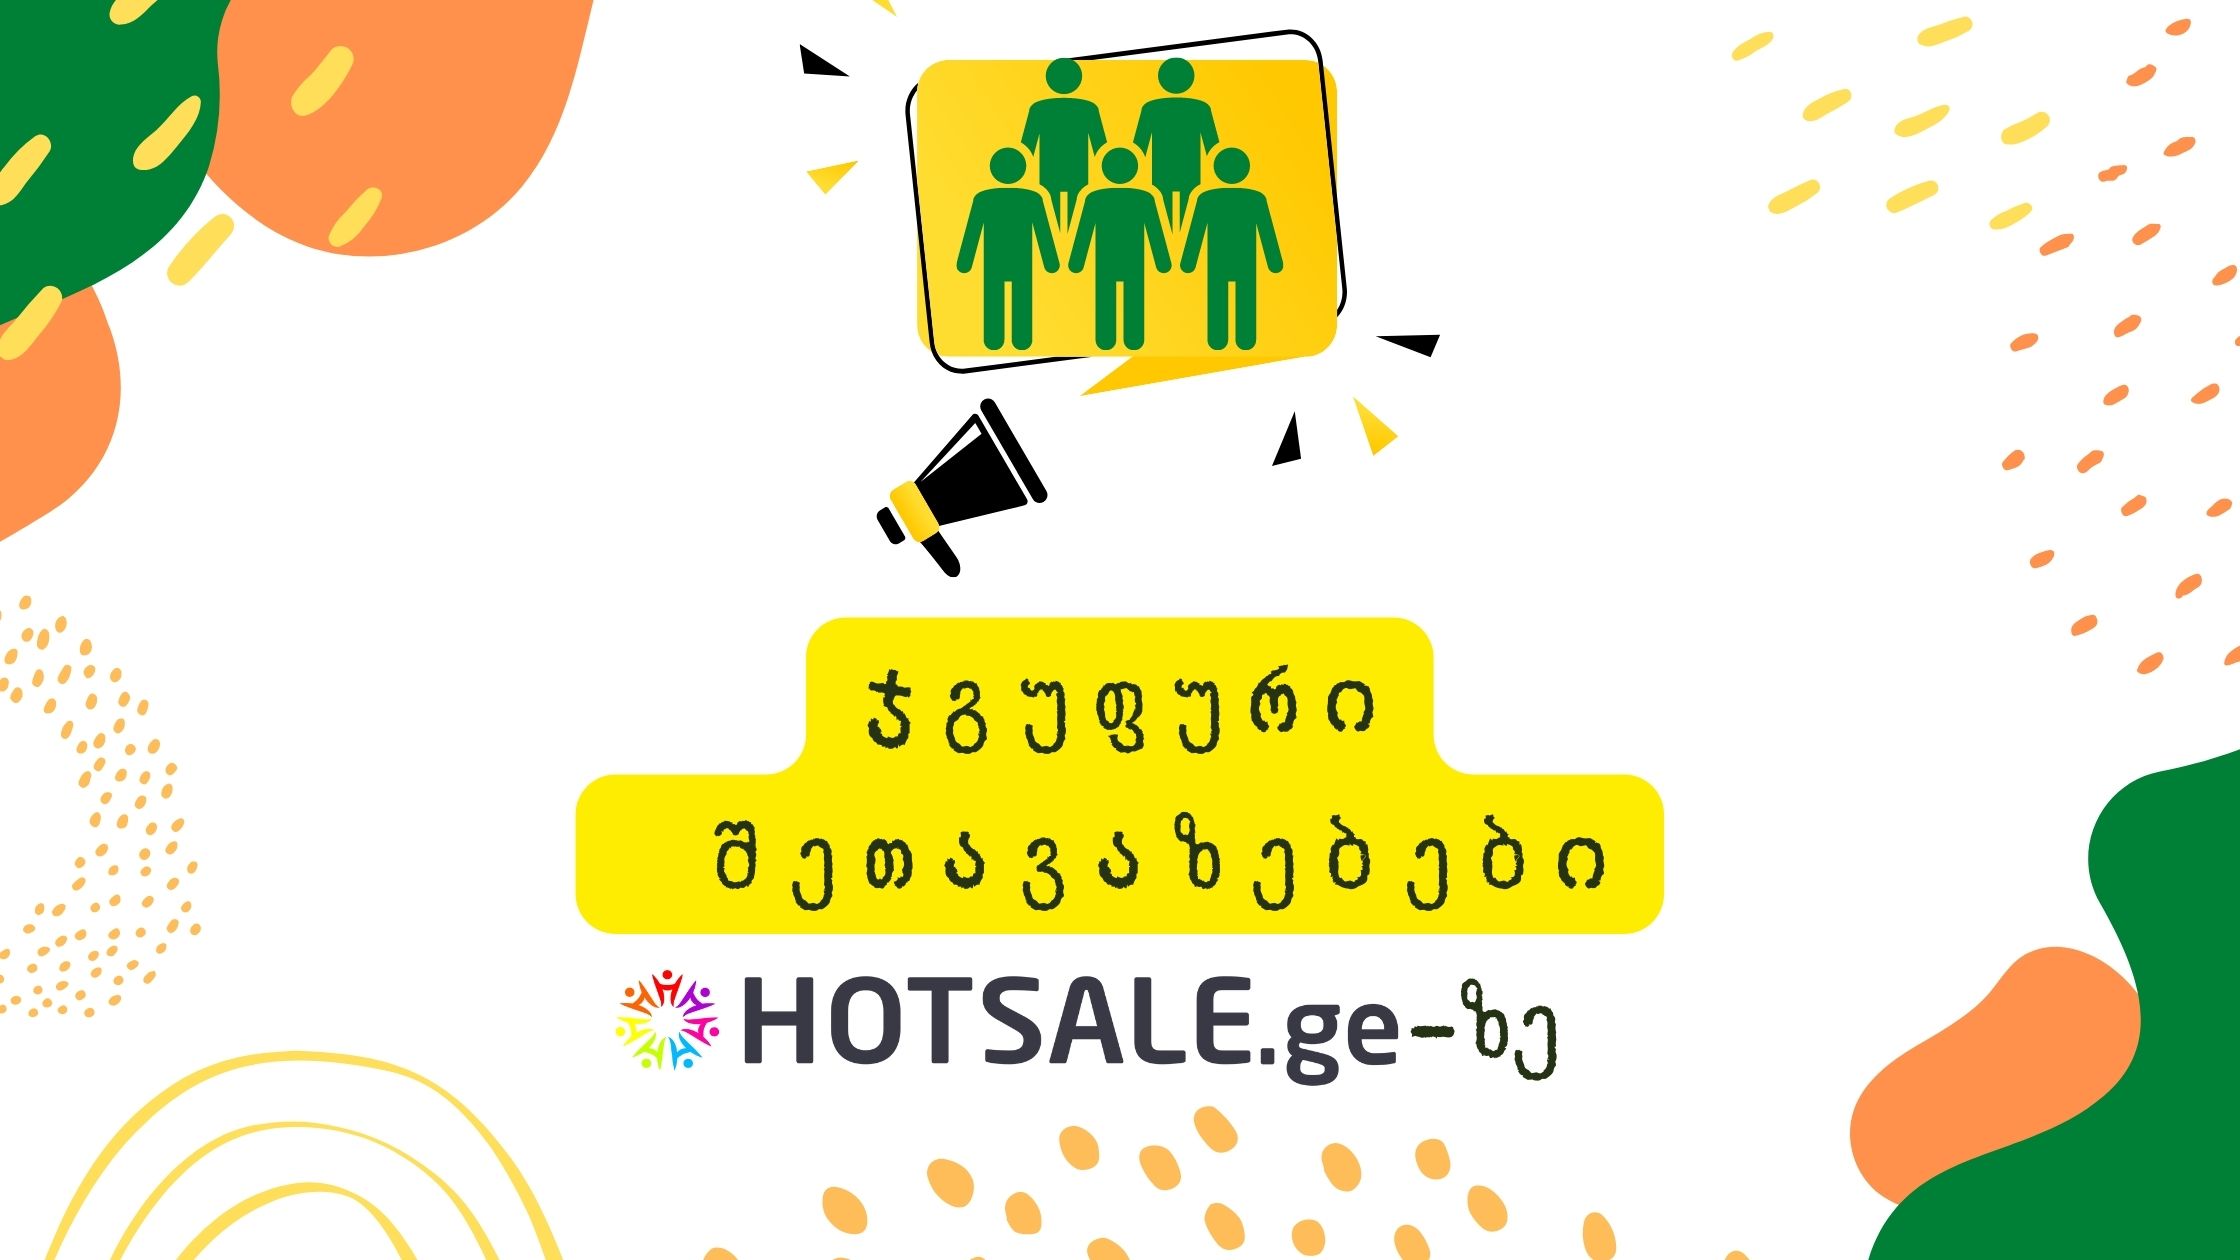 ჯგუფური აქციები Hotsale.ge-ისგან წარმოუდგენელ ფასად - როგორ ვისარგებლოთ  შეთავაზებით?